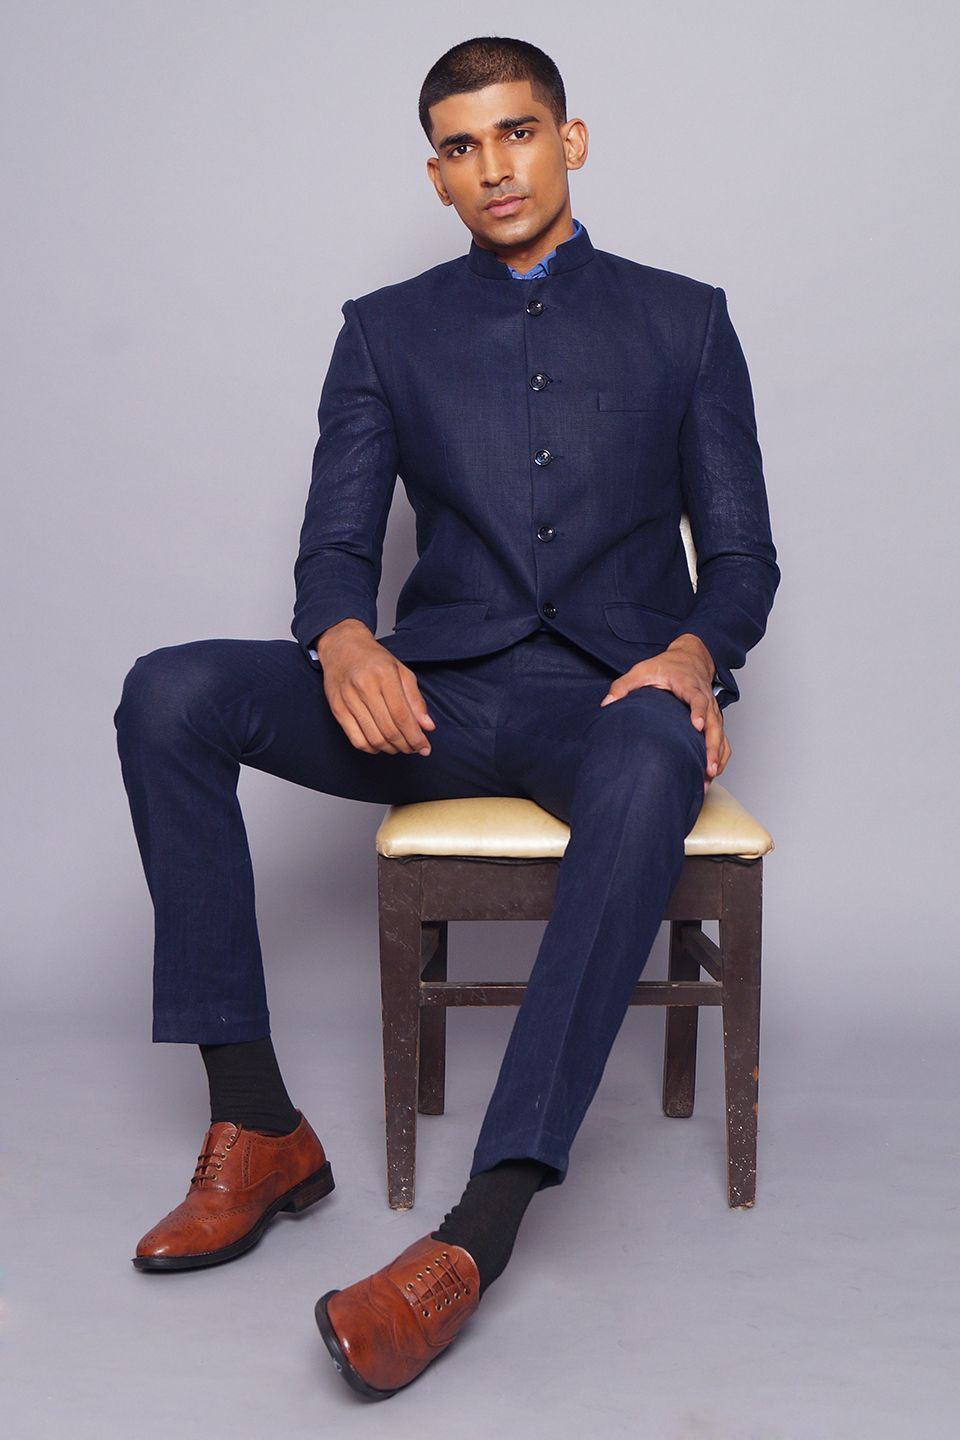 Pure Linen Blue Suit